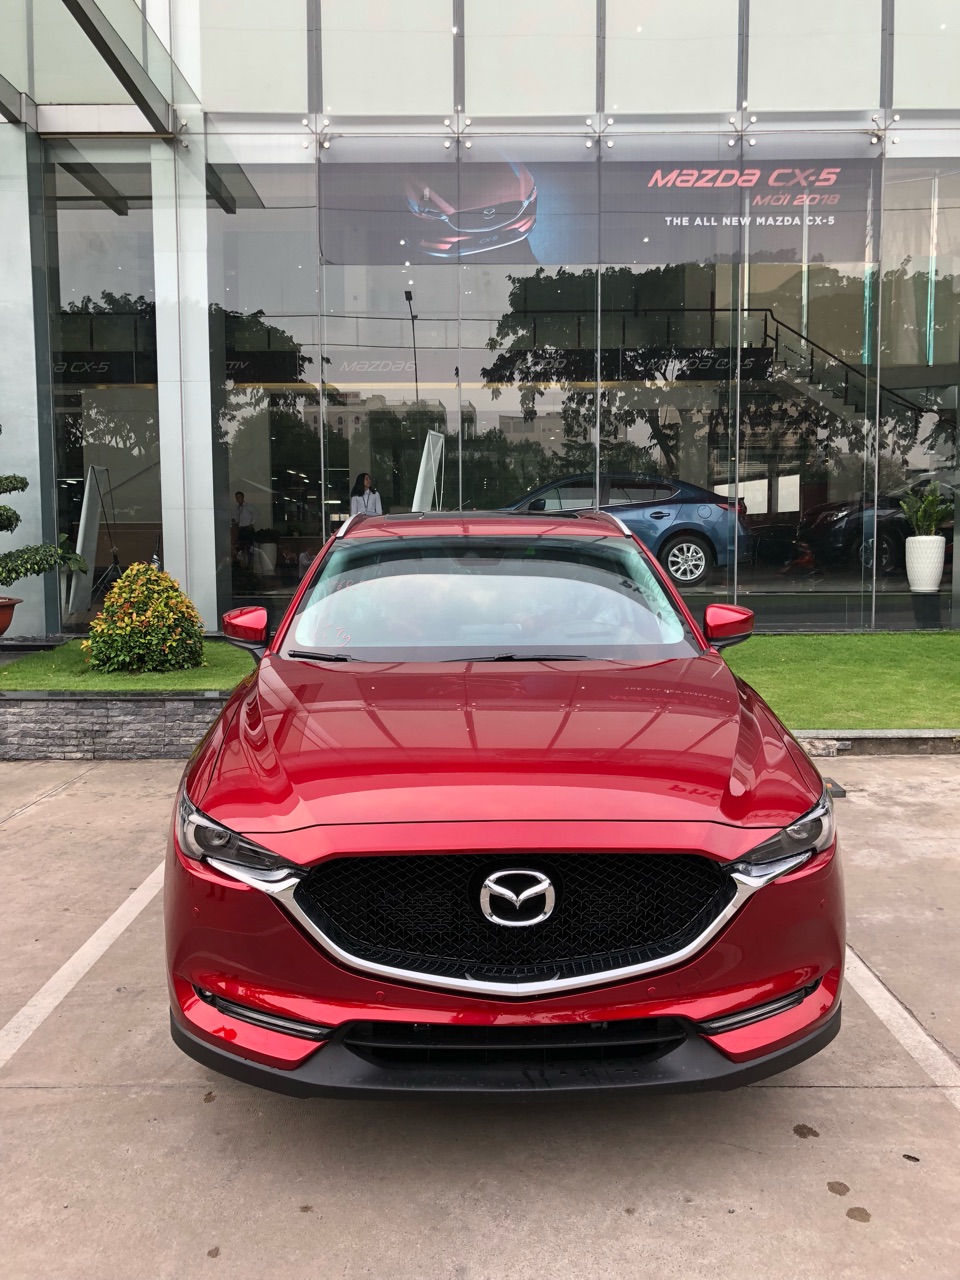 Mazda 5 2.0L 2WD 2018 - CX5 All New Đỏ Pha Lê (Soul Red Crystal) bản giới hạn - siêu phẩm 2019 - Liên hệ Mr. Sơn 0902445756 để được giá tốt nhất